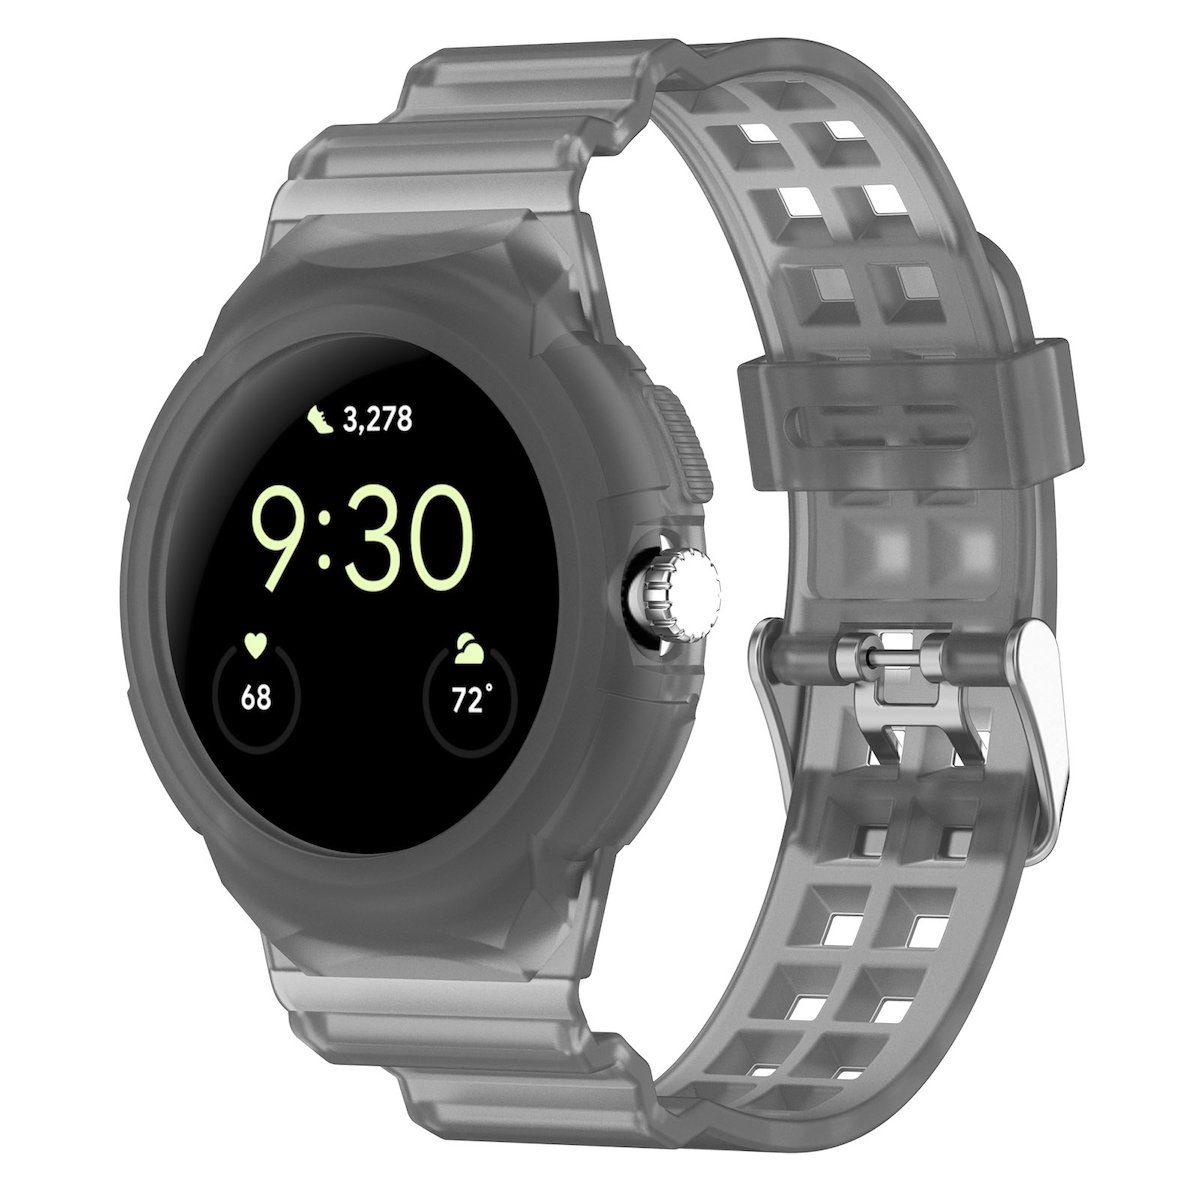 Wigento Smartwatch-Armband 2 Watch Armband Gehäuse Silikon Google Hell Schwarz + 1 mit Pixel Für